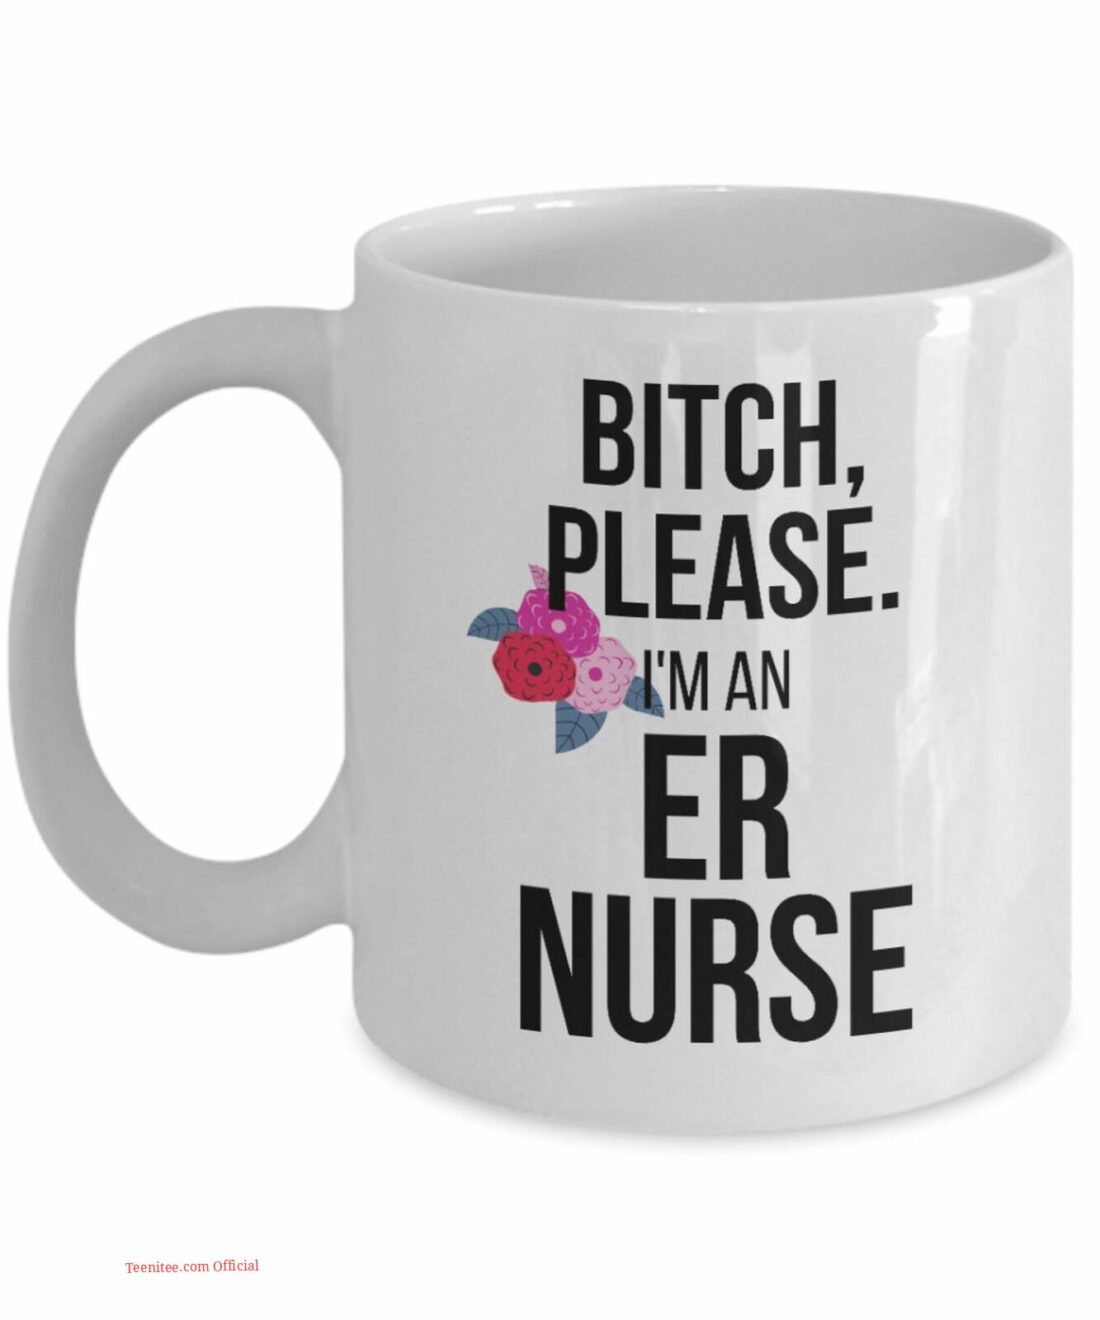 I'm an er nurse| best gift for nurse - 15 oz